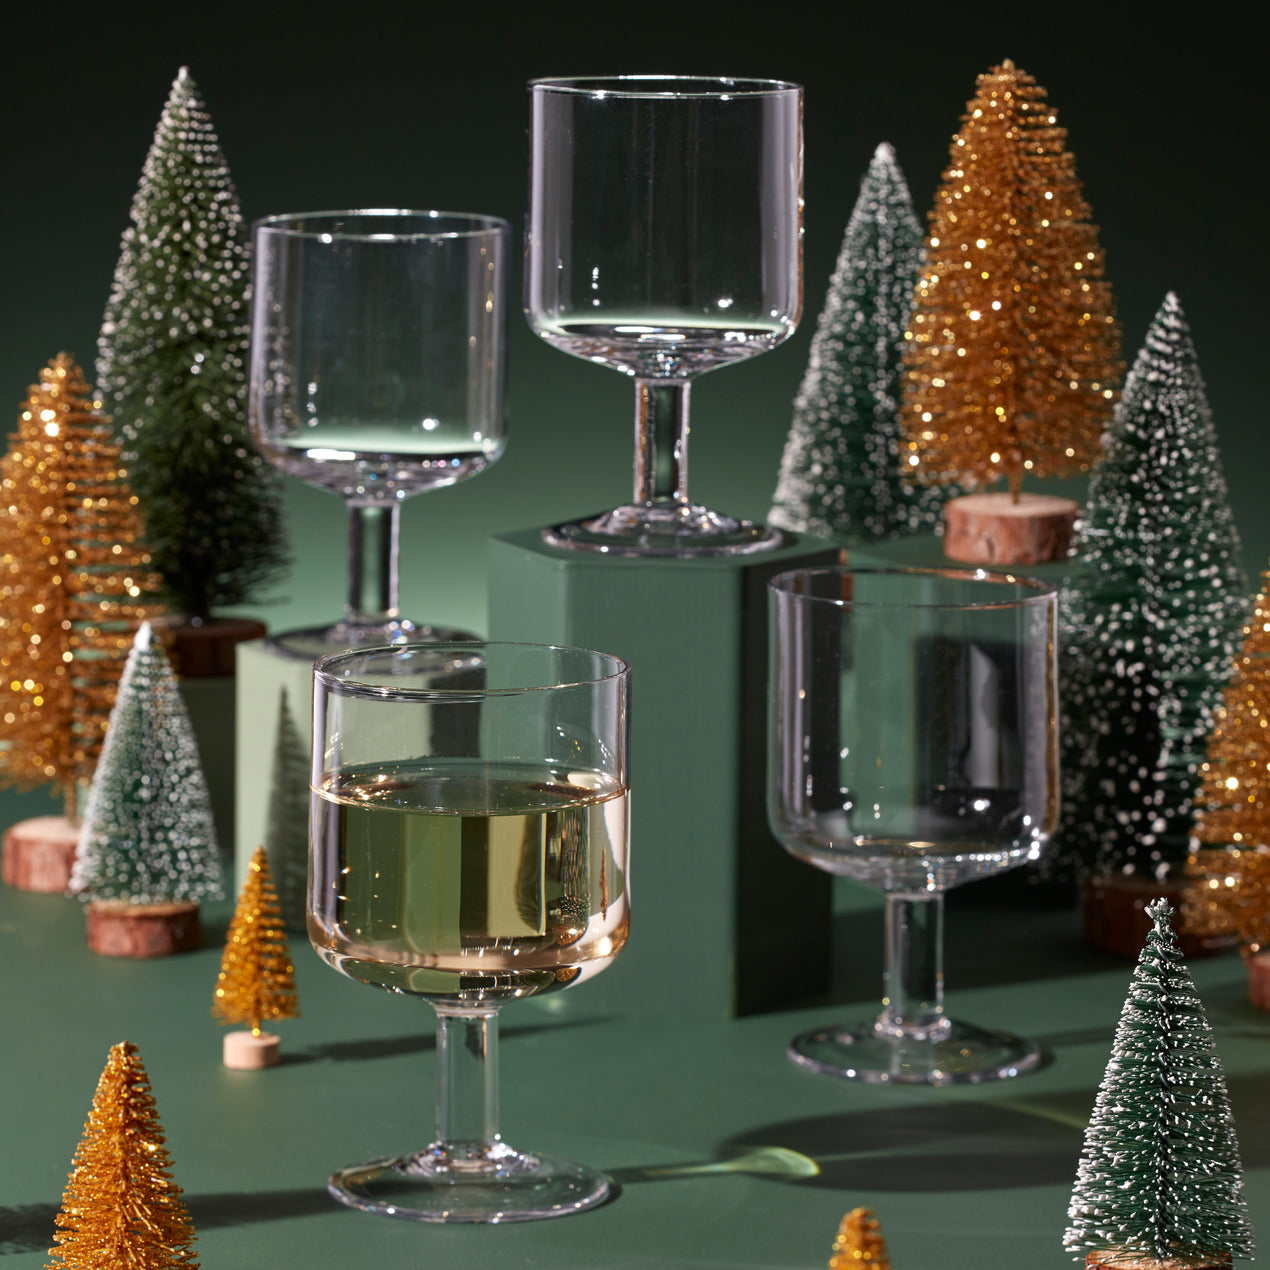 Christmas Tree Set of 4 Wine Glasses